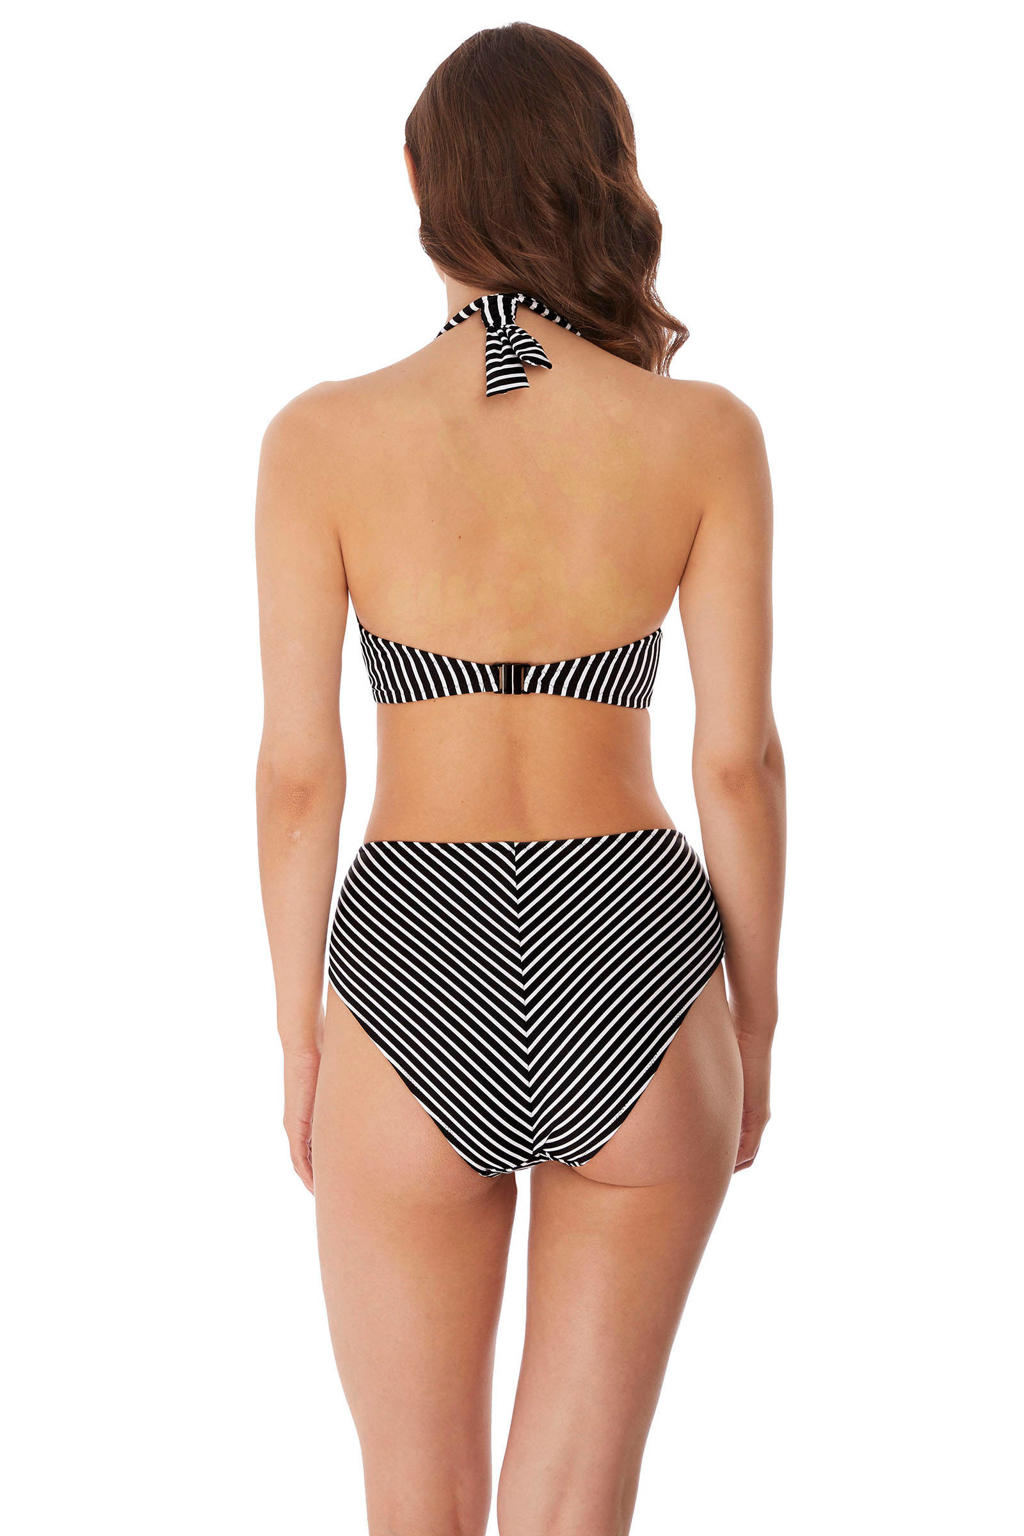 Freya niet-voorgevormde gestreepte halter bikinitop Beach Hut zwart/wit